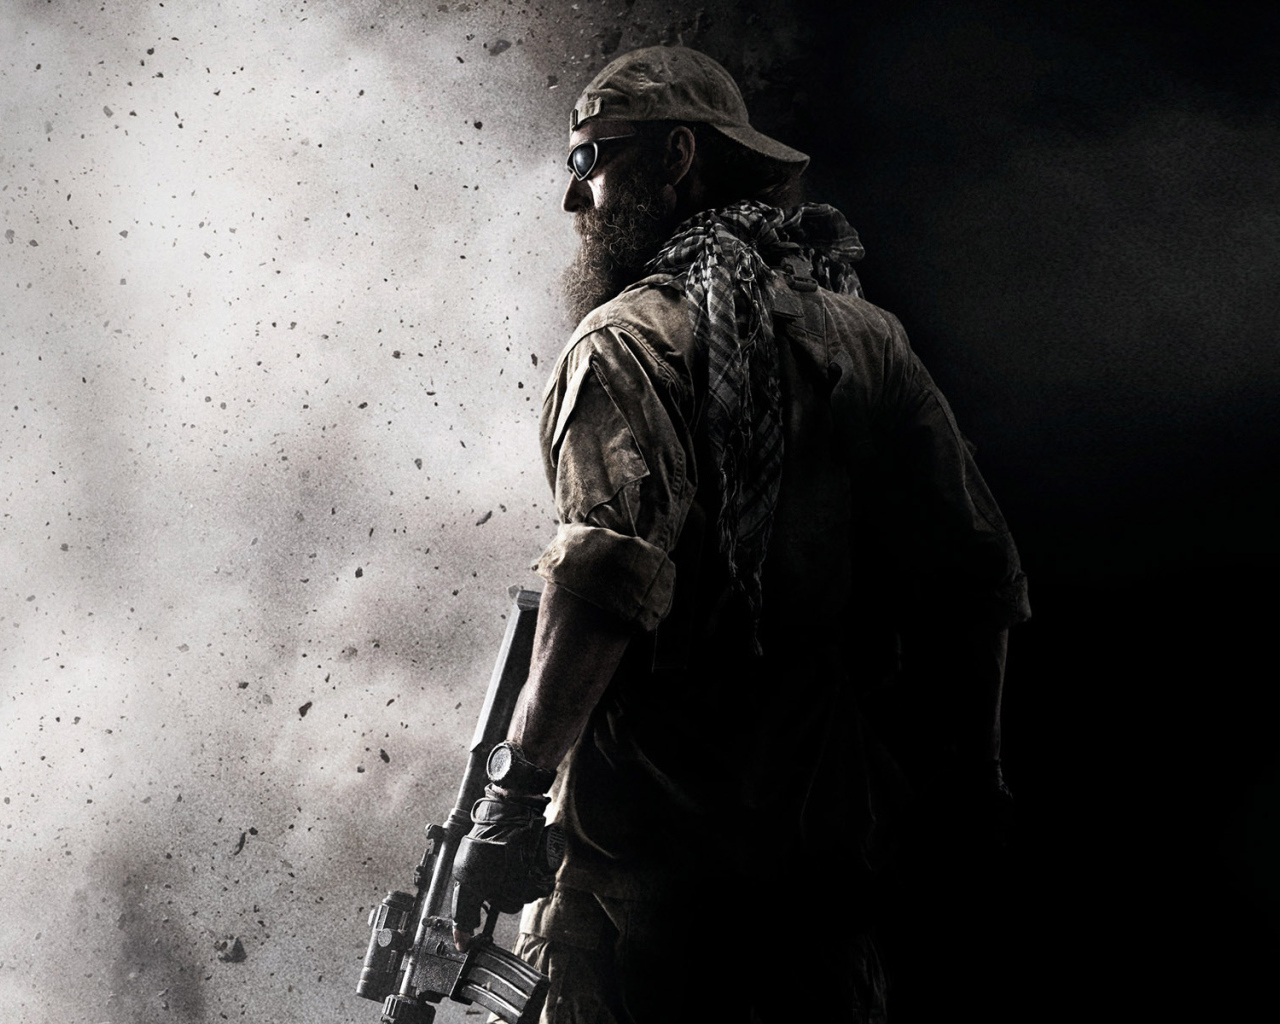 Đam mê với Call of Duty Black Ops? Đừng bỏ lỡ hình nền desktop đẹp mắt và sắc nét của chúng tôi! Chắc chắn rằng bạn sẽ được cảm nhận trọn vẹn sức mạnh của trò chơi đỉnh cao này. 